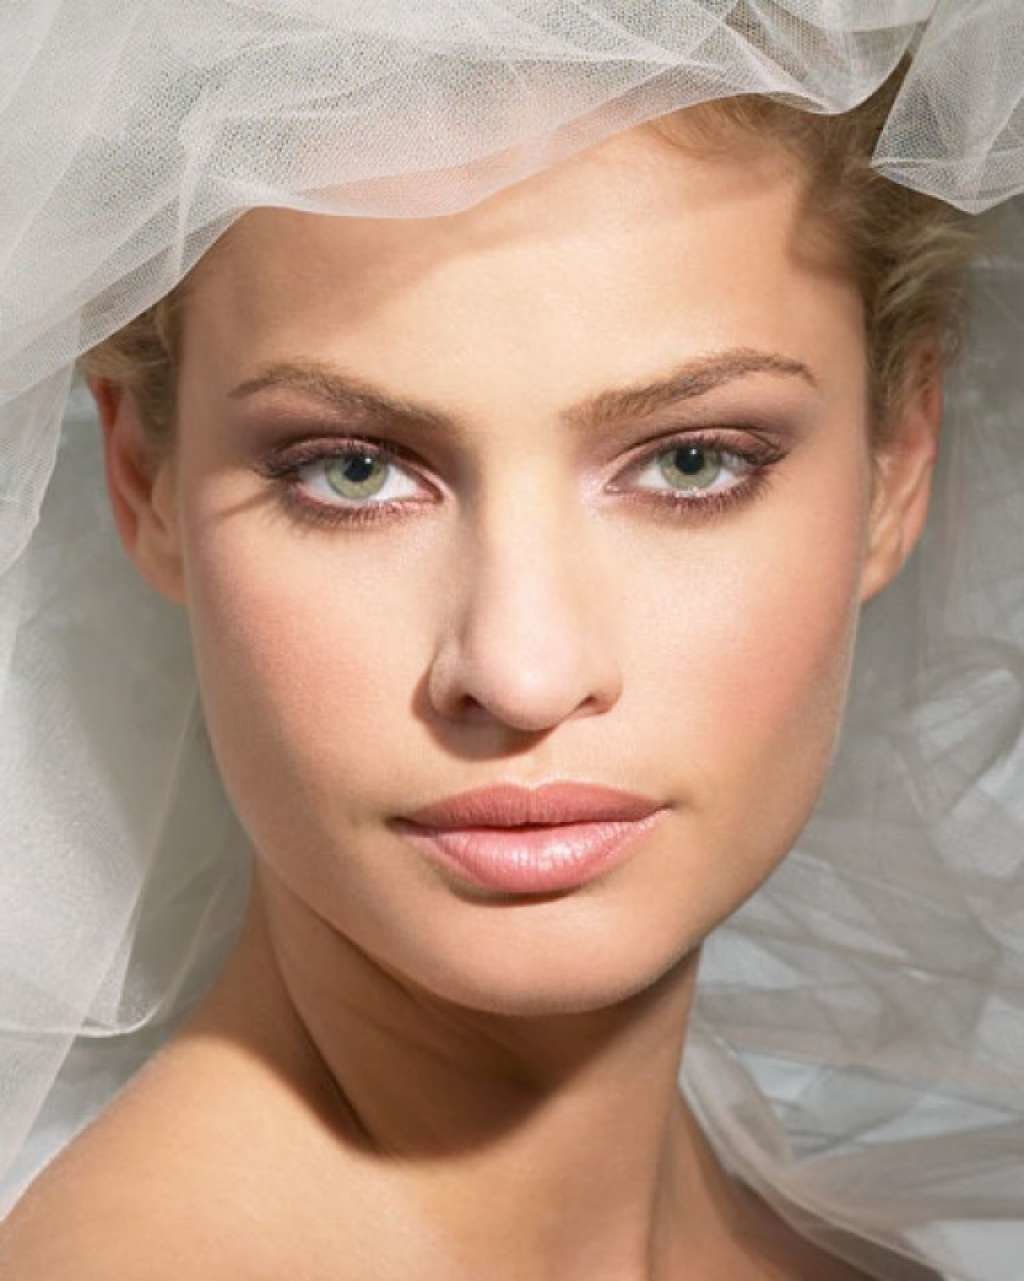 Как самой сделать макияж на свадьбу – секреты и хитрости